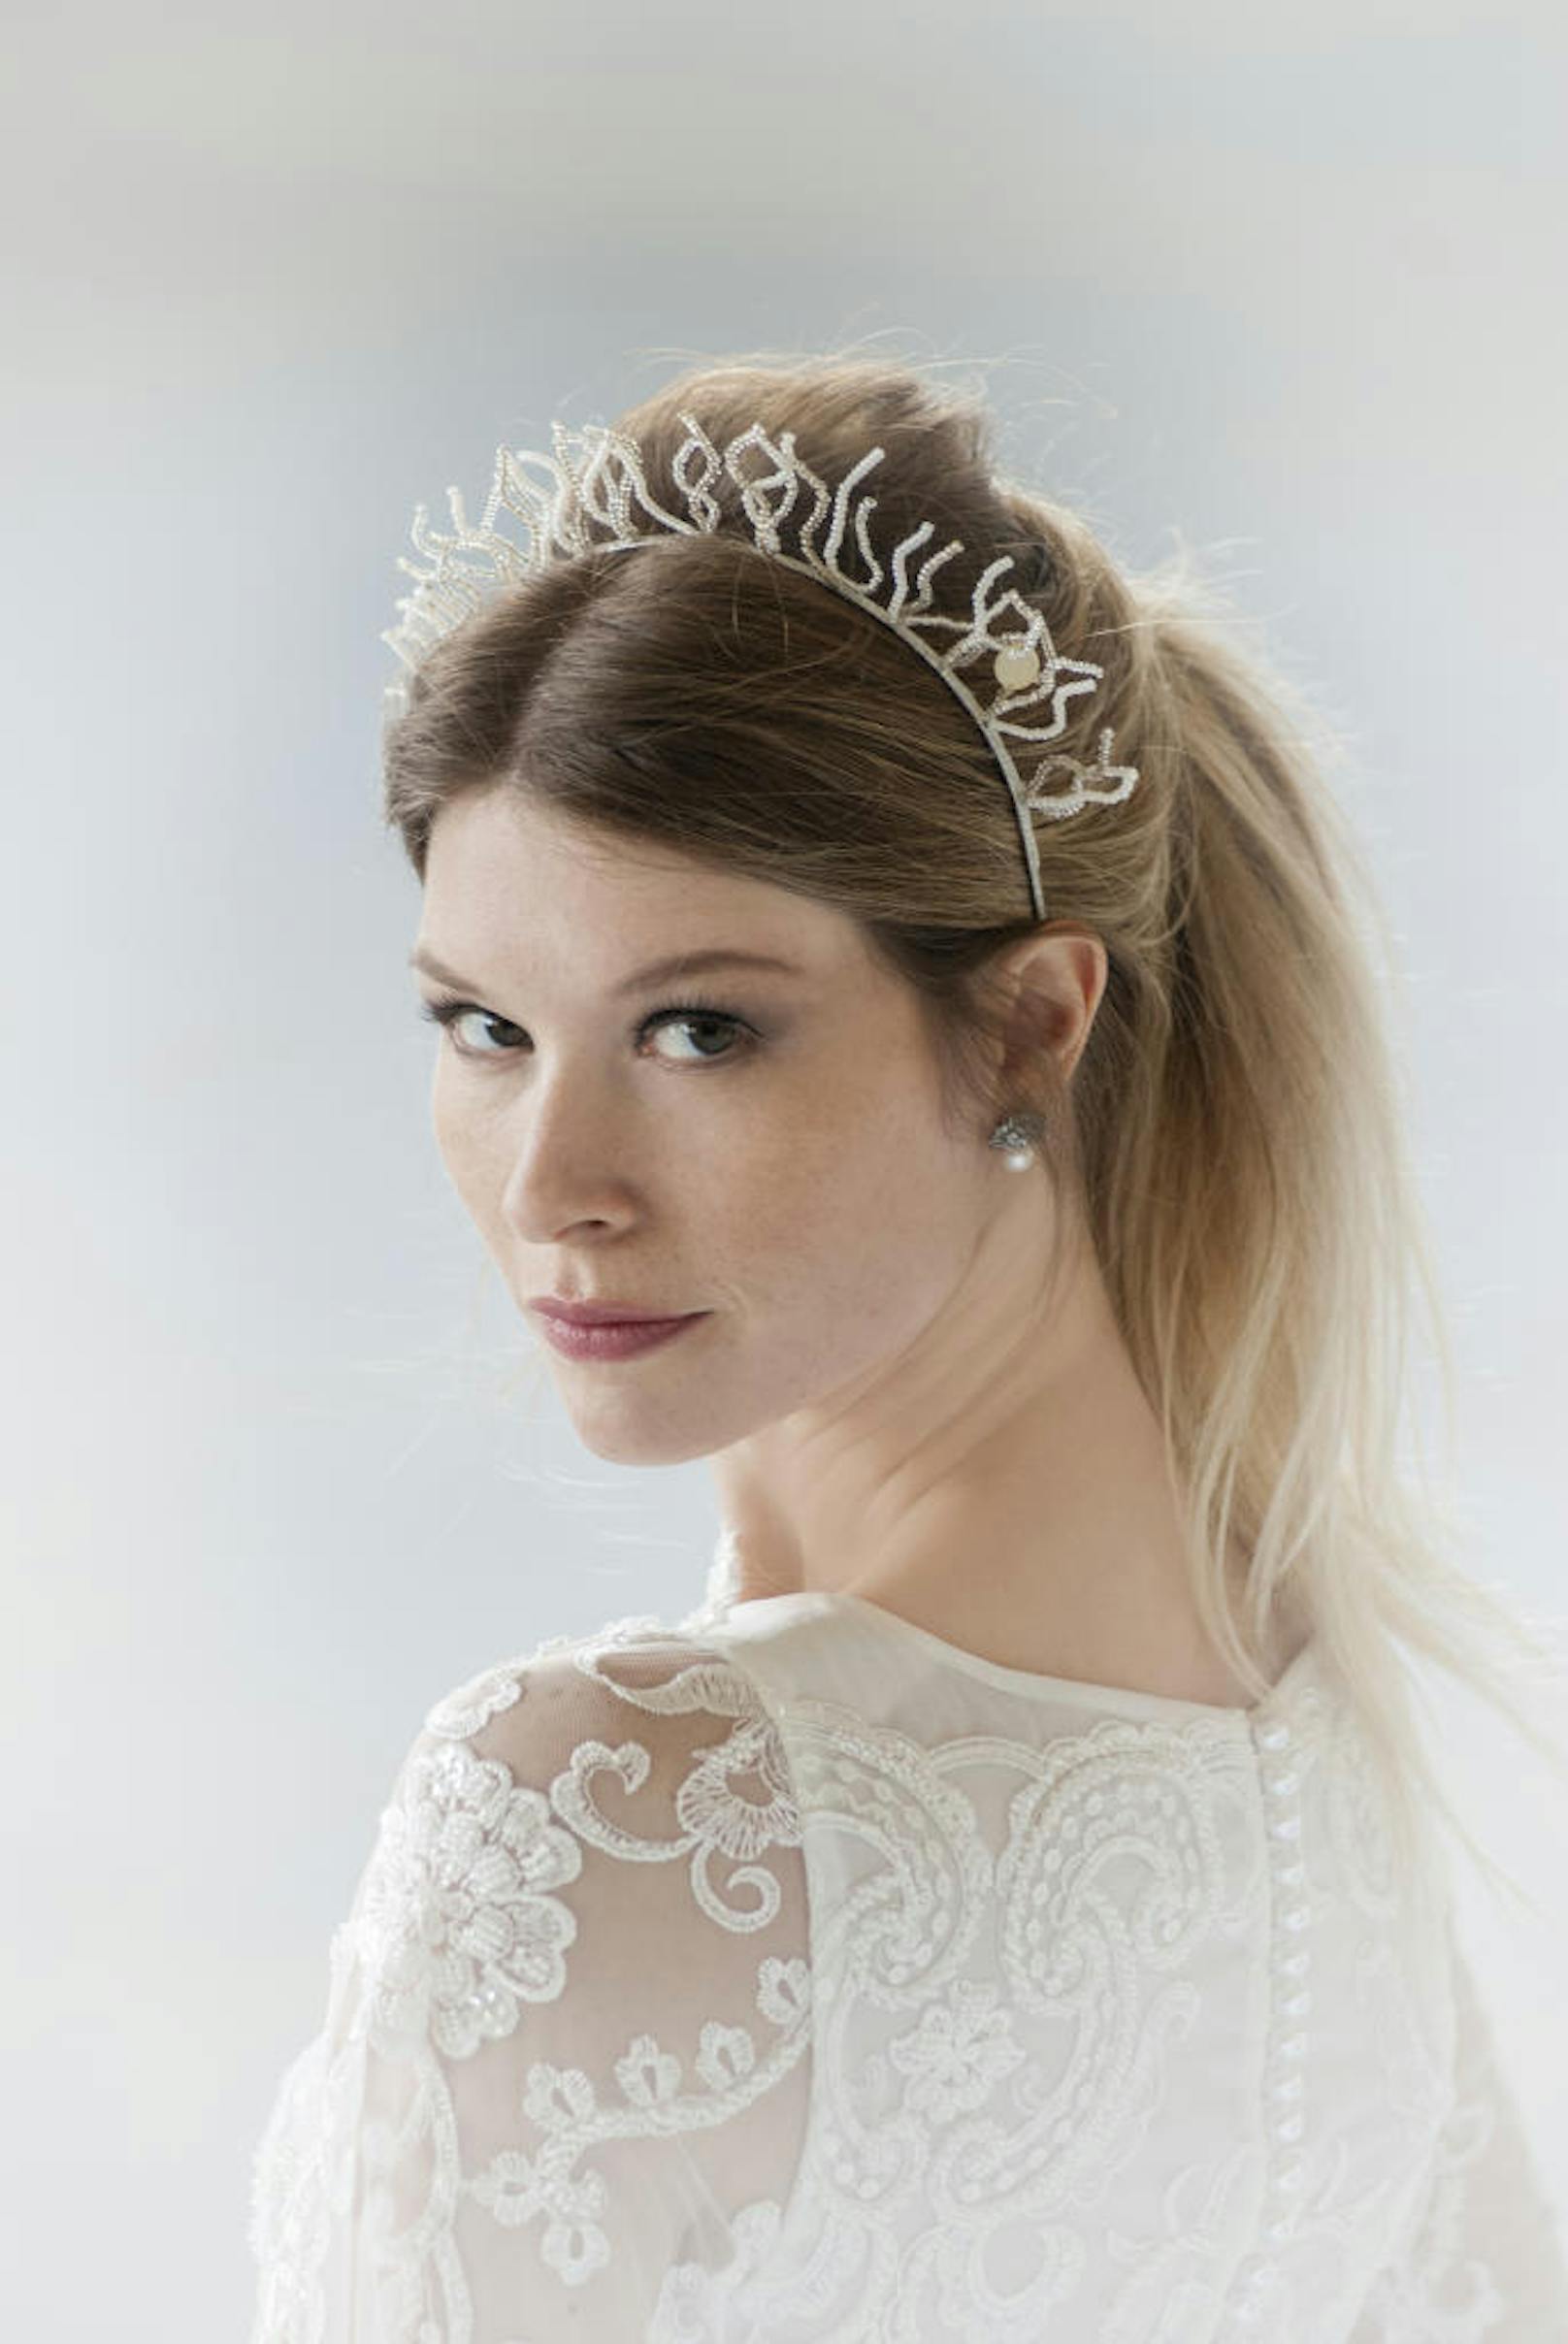 Niely Hoetsch ist für ihre außergewöhnlichen Braut-Headpieces bekannt. Wer seinem Braut-Look den letzten Schiff verleihen möchte, kann sich bei der Designerin in ihrem Atelier ein individuelles Stück fertigen lassen. (Foto: Maria Tsakiri) 